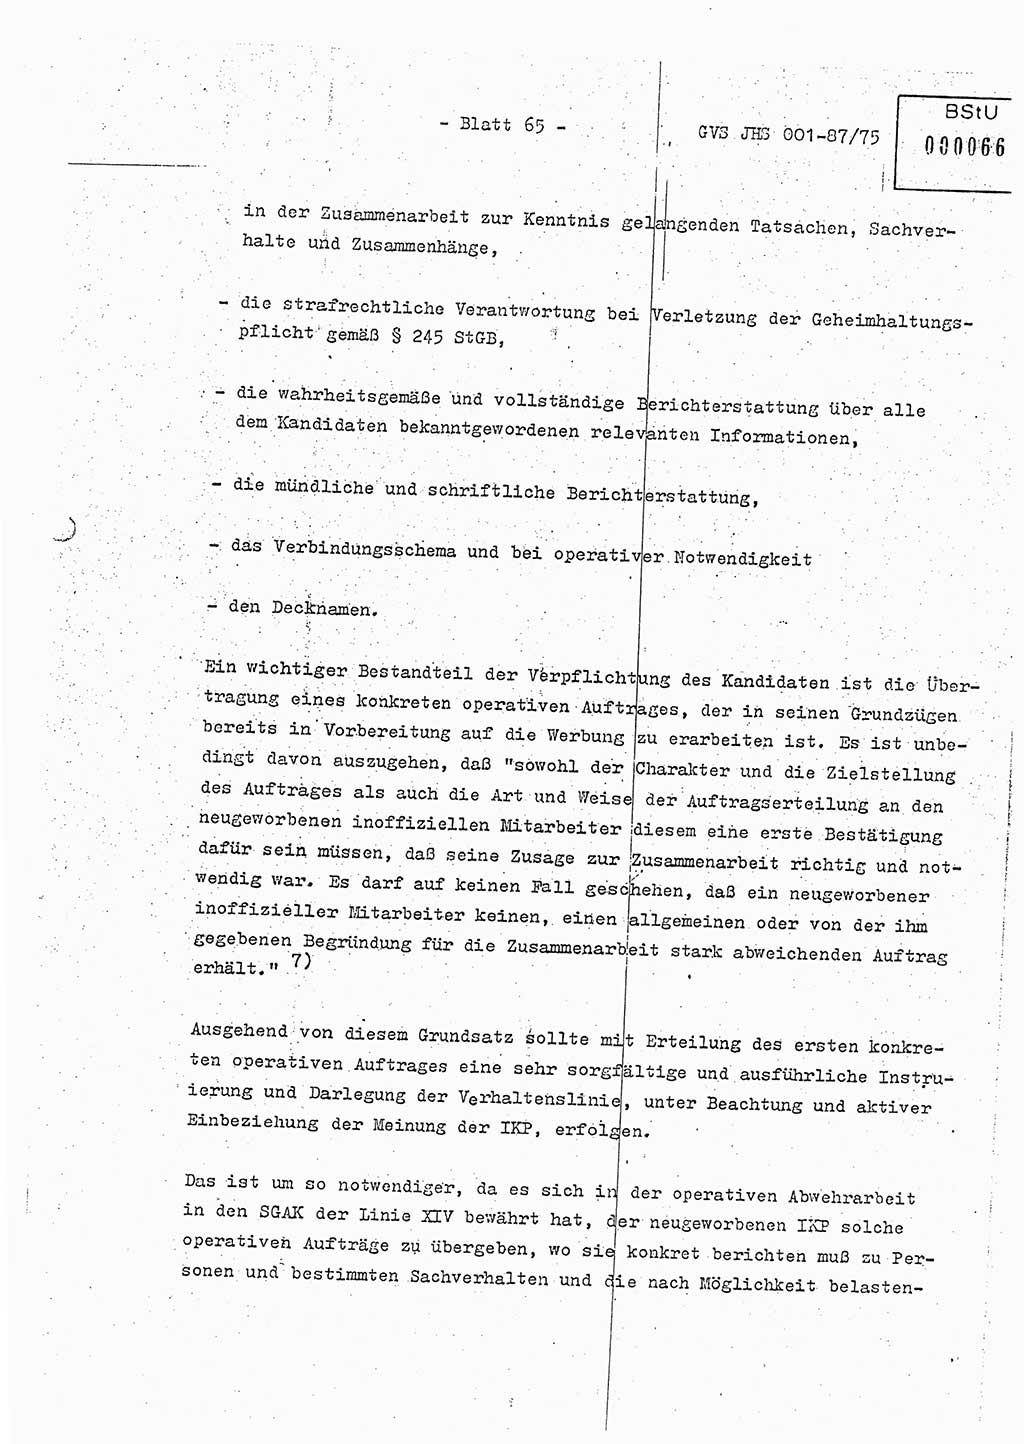 Diplomarbeit Hauptmann Volkmar Heinz (Abt. ⅩⅣ), Oberleutnant Lothar Rüdiger (BV Lpz. Abt. Ⅺ), Ministerium für Staatssicherheit (MfS) [Deutsche Demokratische Republik (DDR)], Juristische Hochschule (JHS), Geheime Verschlußsache (GVS) o001-87/75, Potsdam 1975, Seite 65 (Dipl.-Arb. MfS DDR JHS GVS o001-87/75 1975, S. 65)